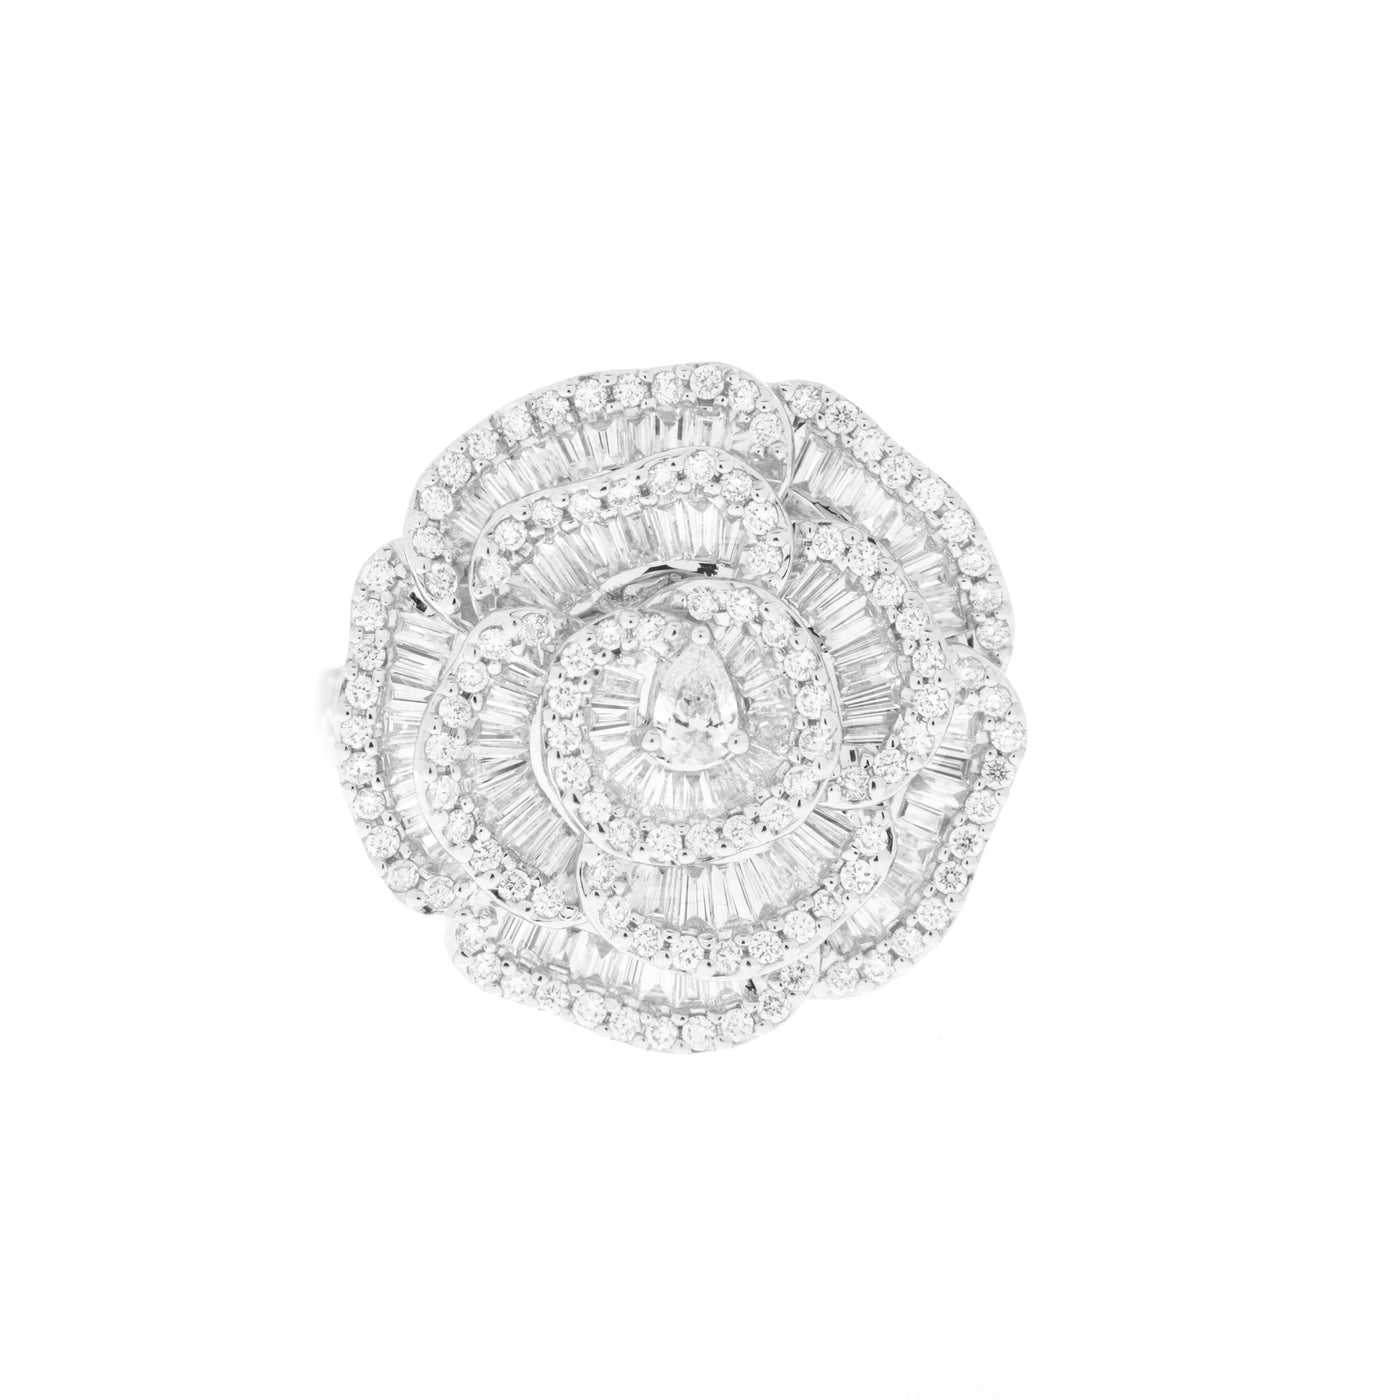 Soit Belle White Gold Flower Petal Diamond Ring.